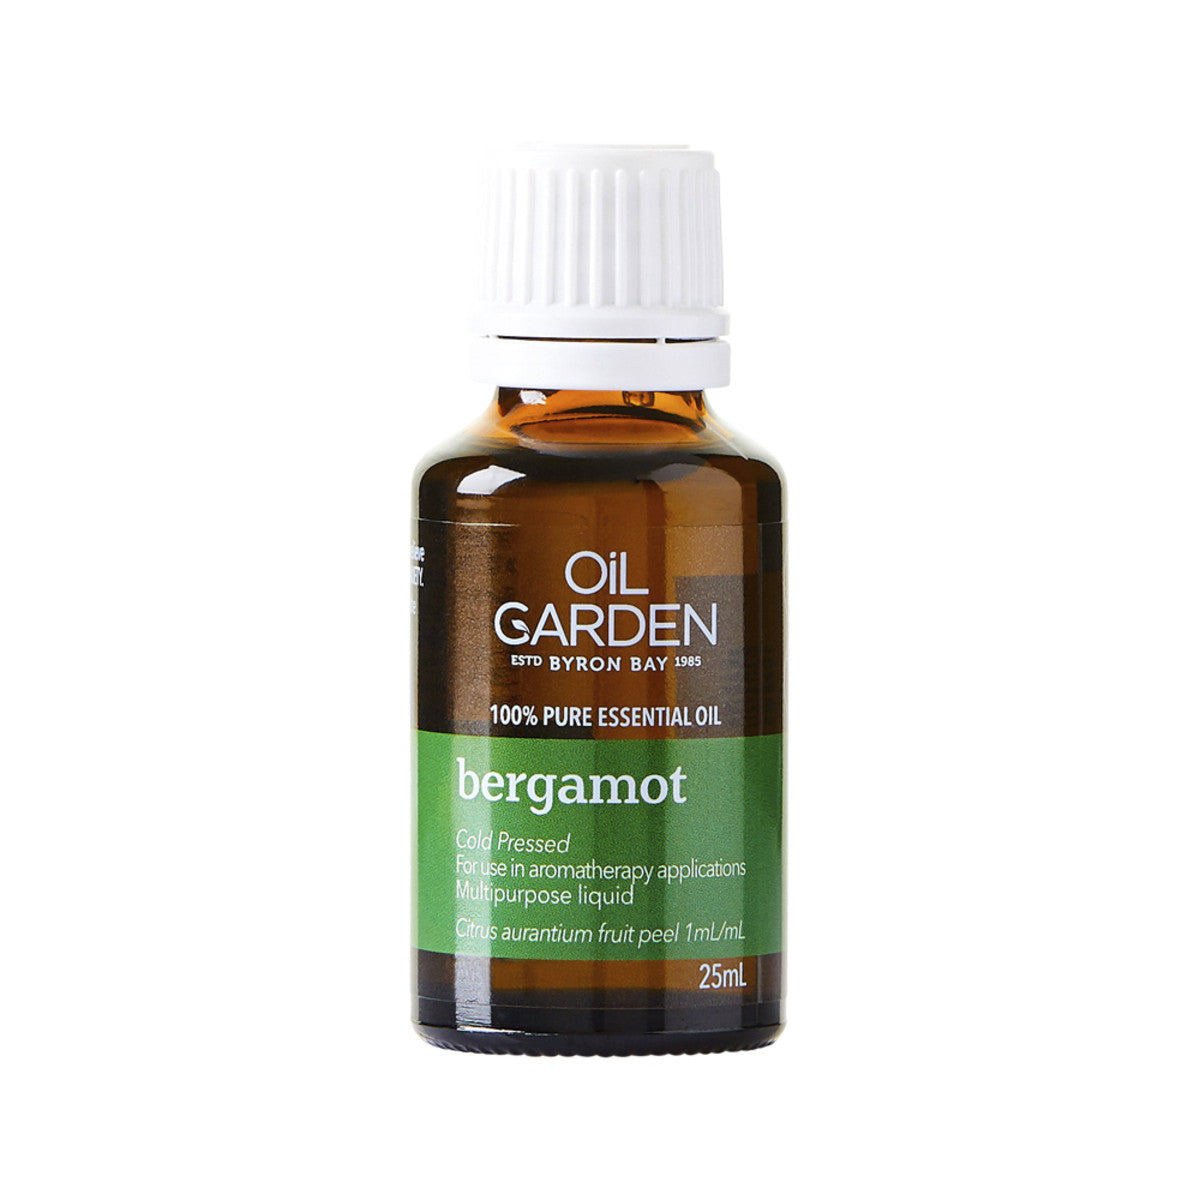 Oil Garden - Essential Oil Bergamot